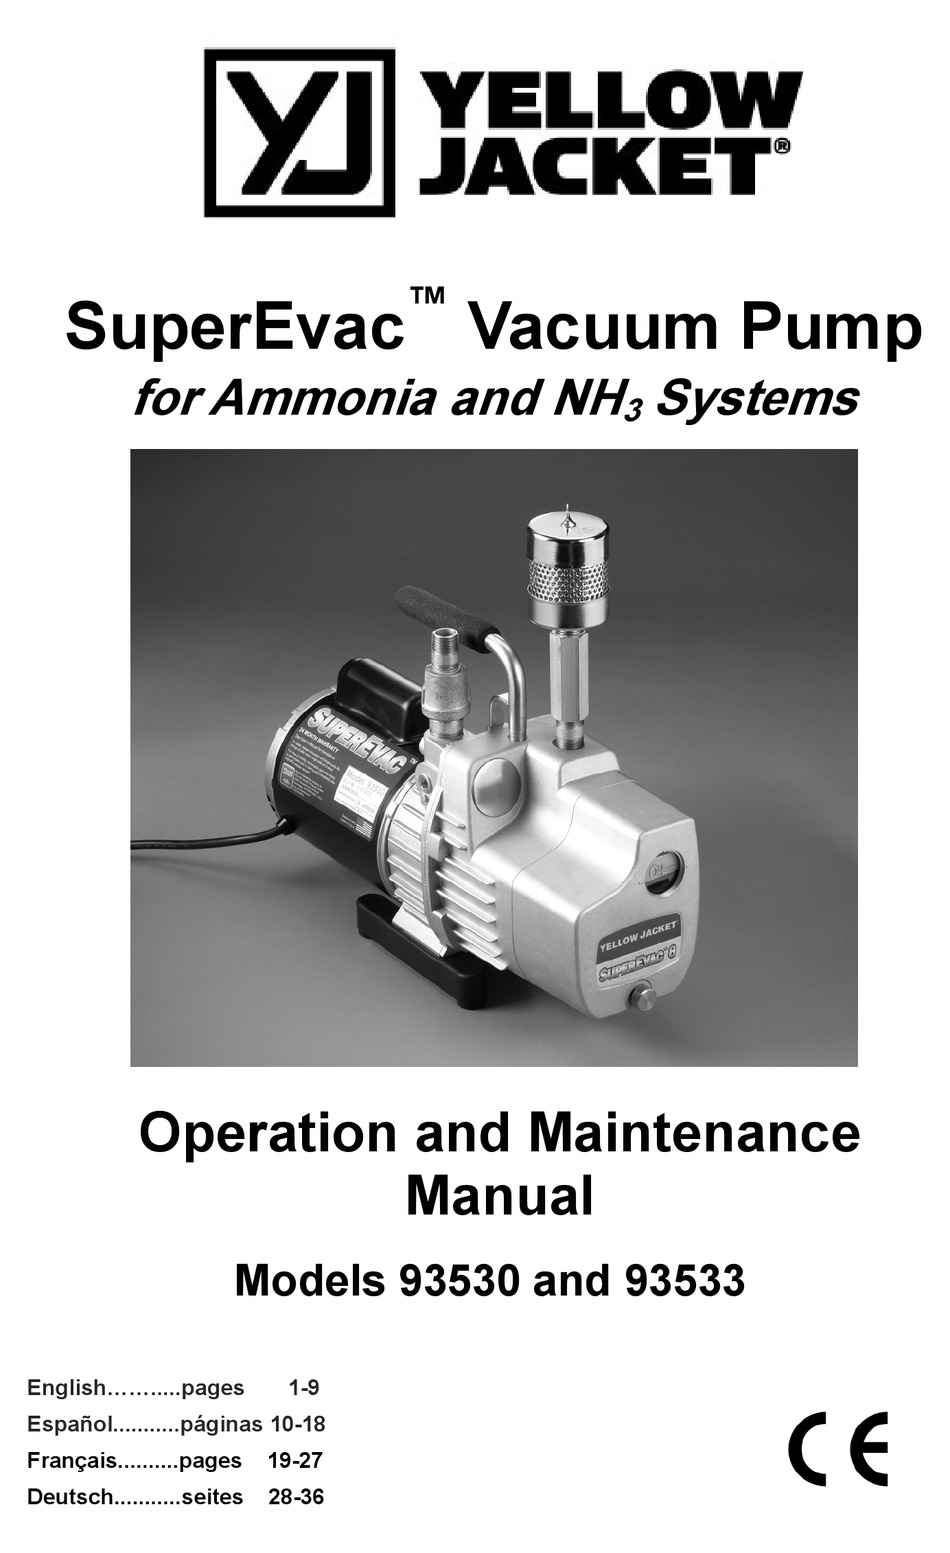 Yellow Jacket Vacuum Pump 93460 Parts Manual